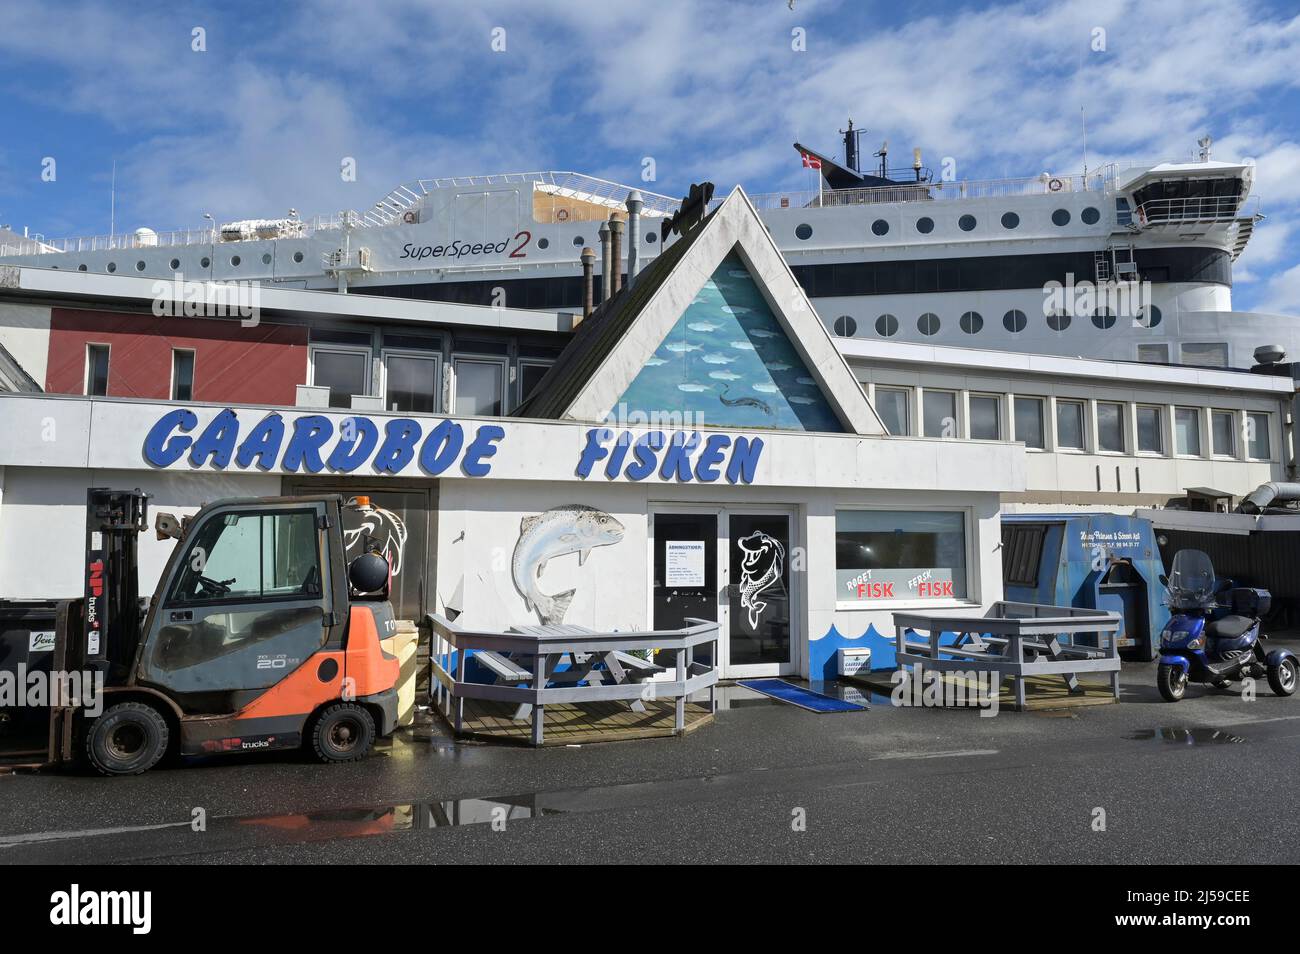 DENMARK, Jutland, Hirtshals, port, fish shop and ferry / DÄNEMARK, Jütland, Hirtshals, Hafen, Fischladen, Fähre Colorline Superspeed 2 Stock Photo